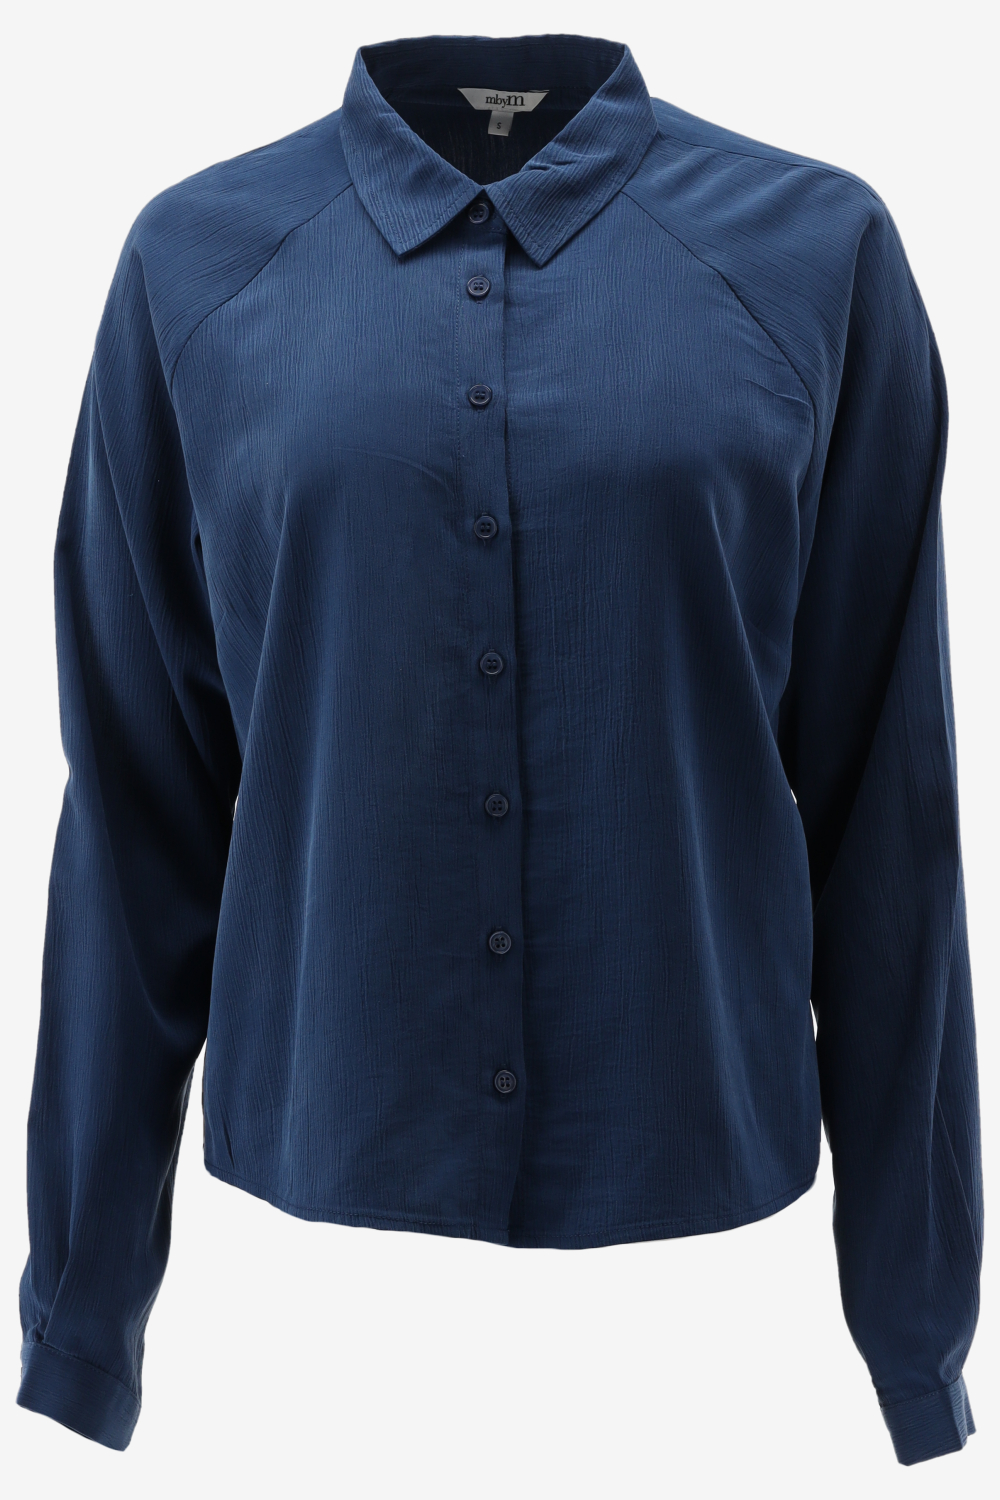 Blauwe blouse Alenka - mbyM - Maat S